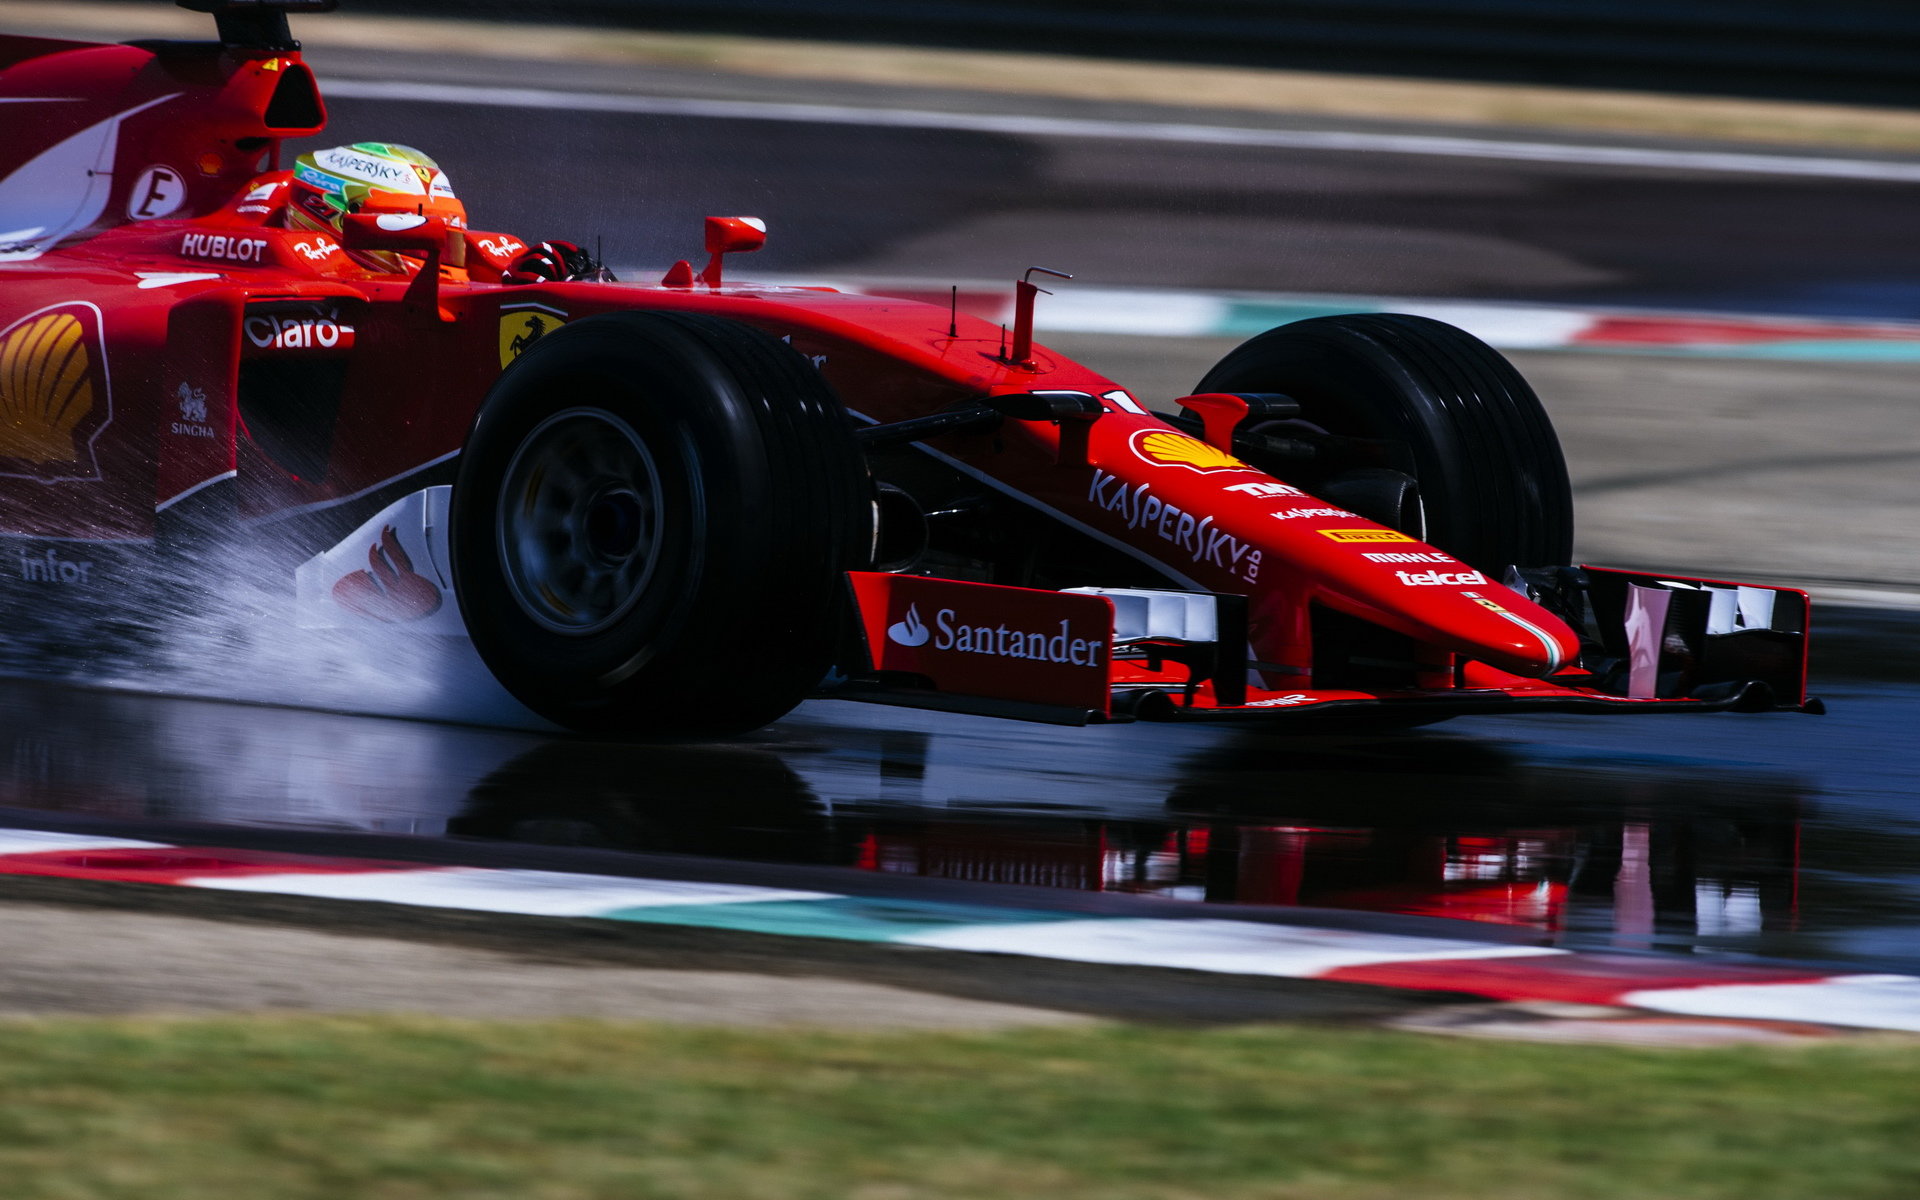 Test pneumatik Pirelli pro sezónu 2017 ve Fioranu